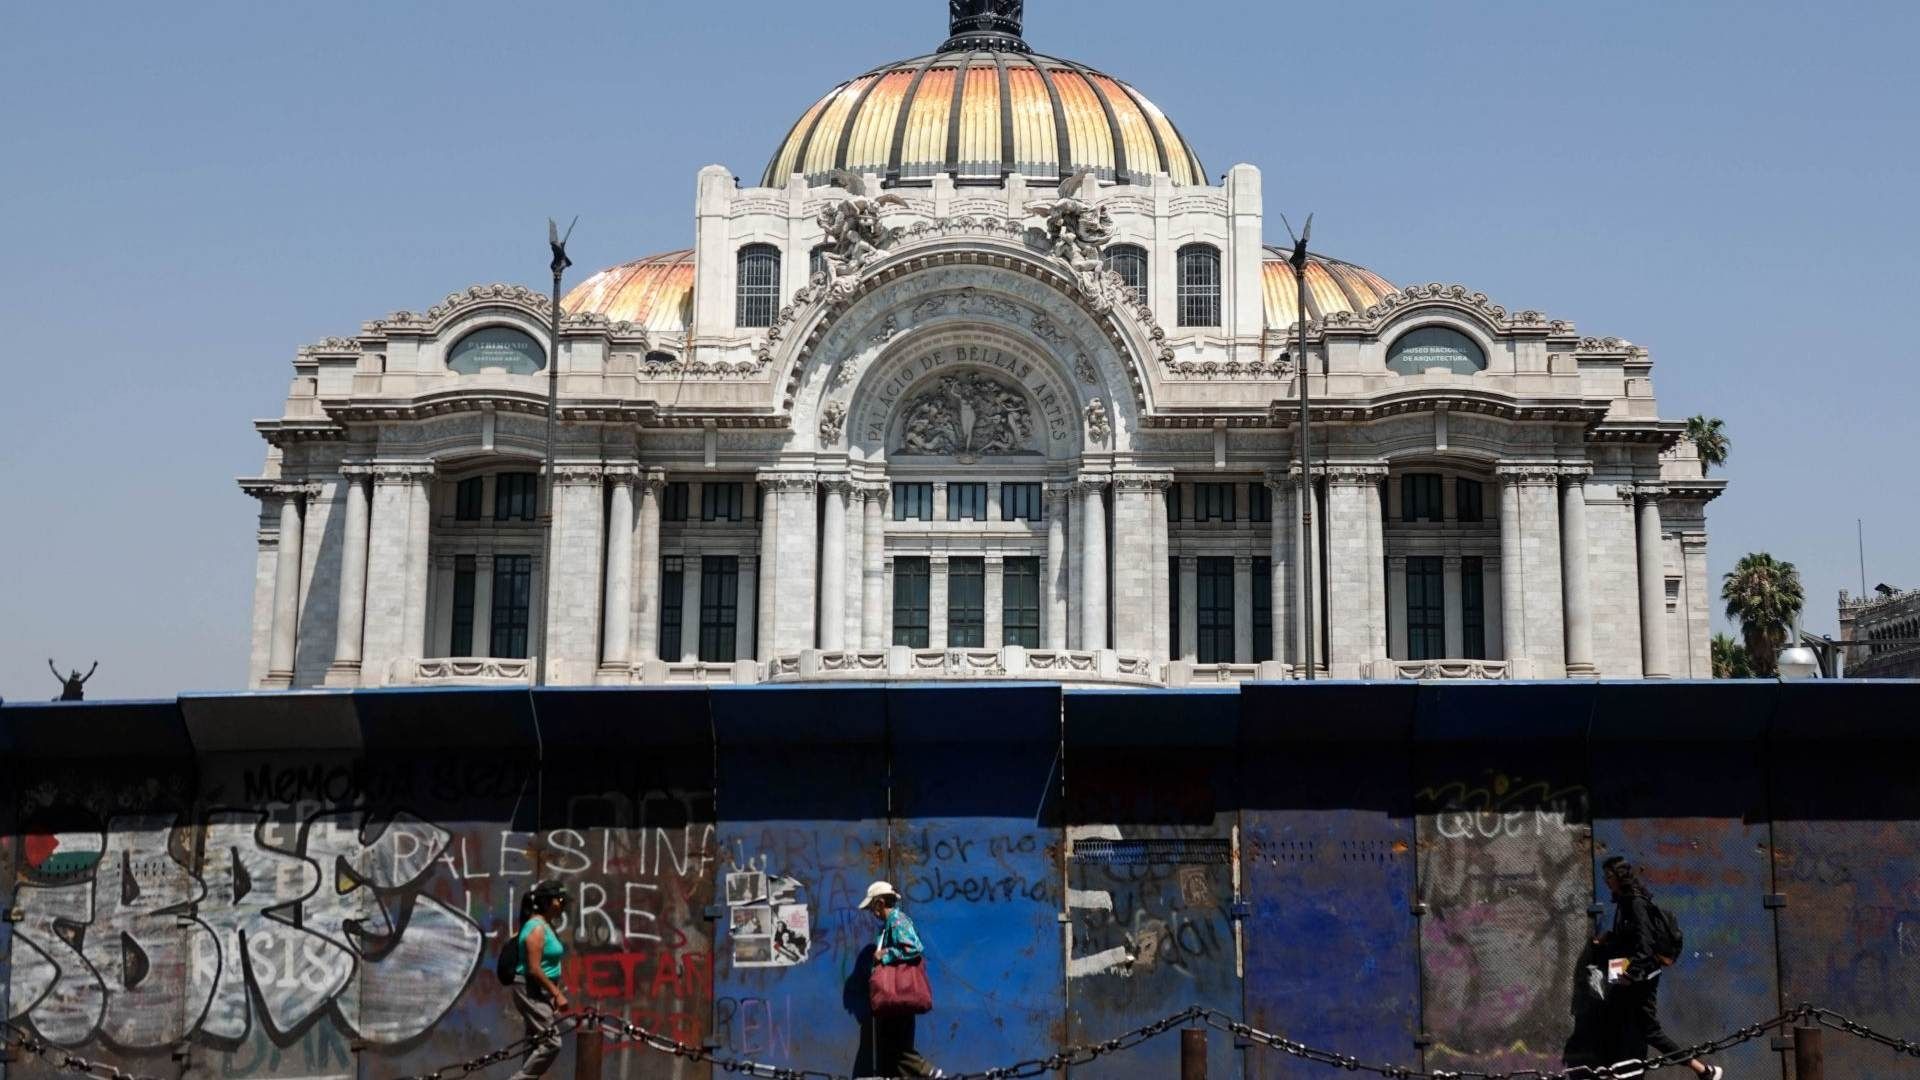 Vallas metálicas protegen el Palacio de Bellas Artes